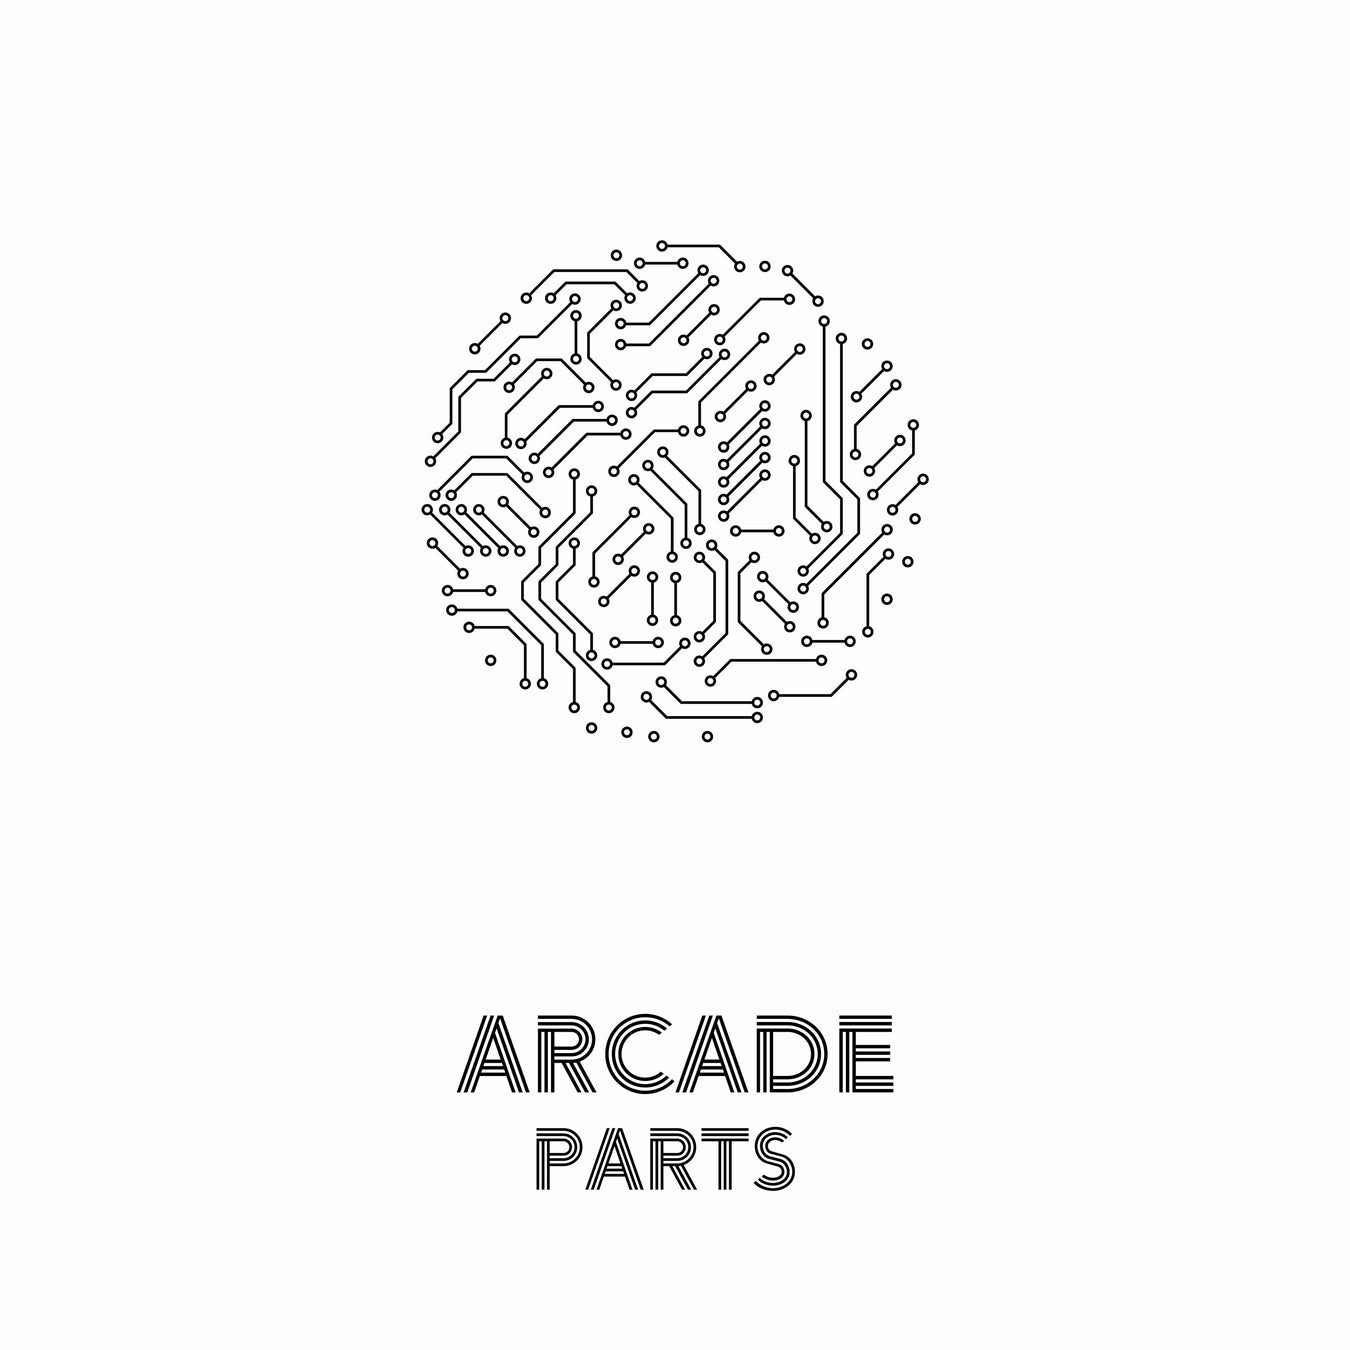 Arcade Parts